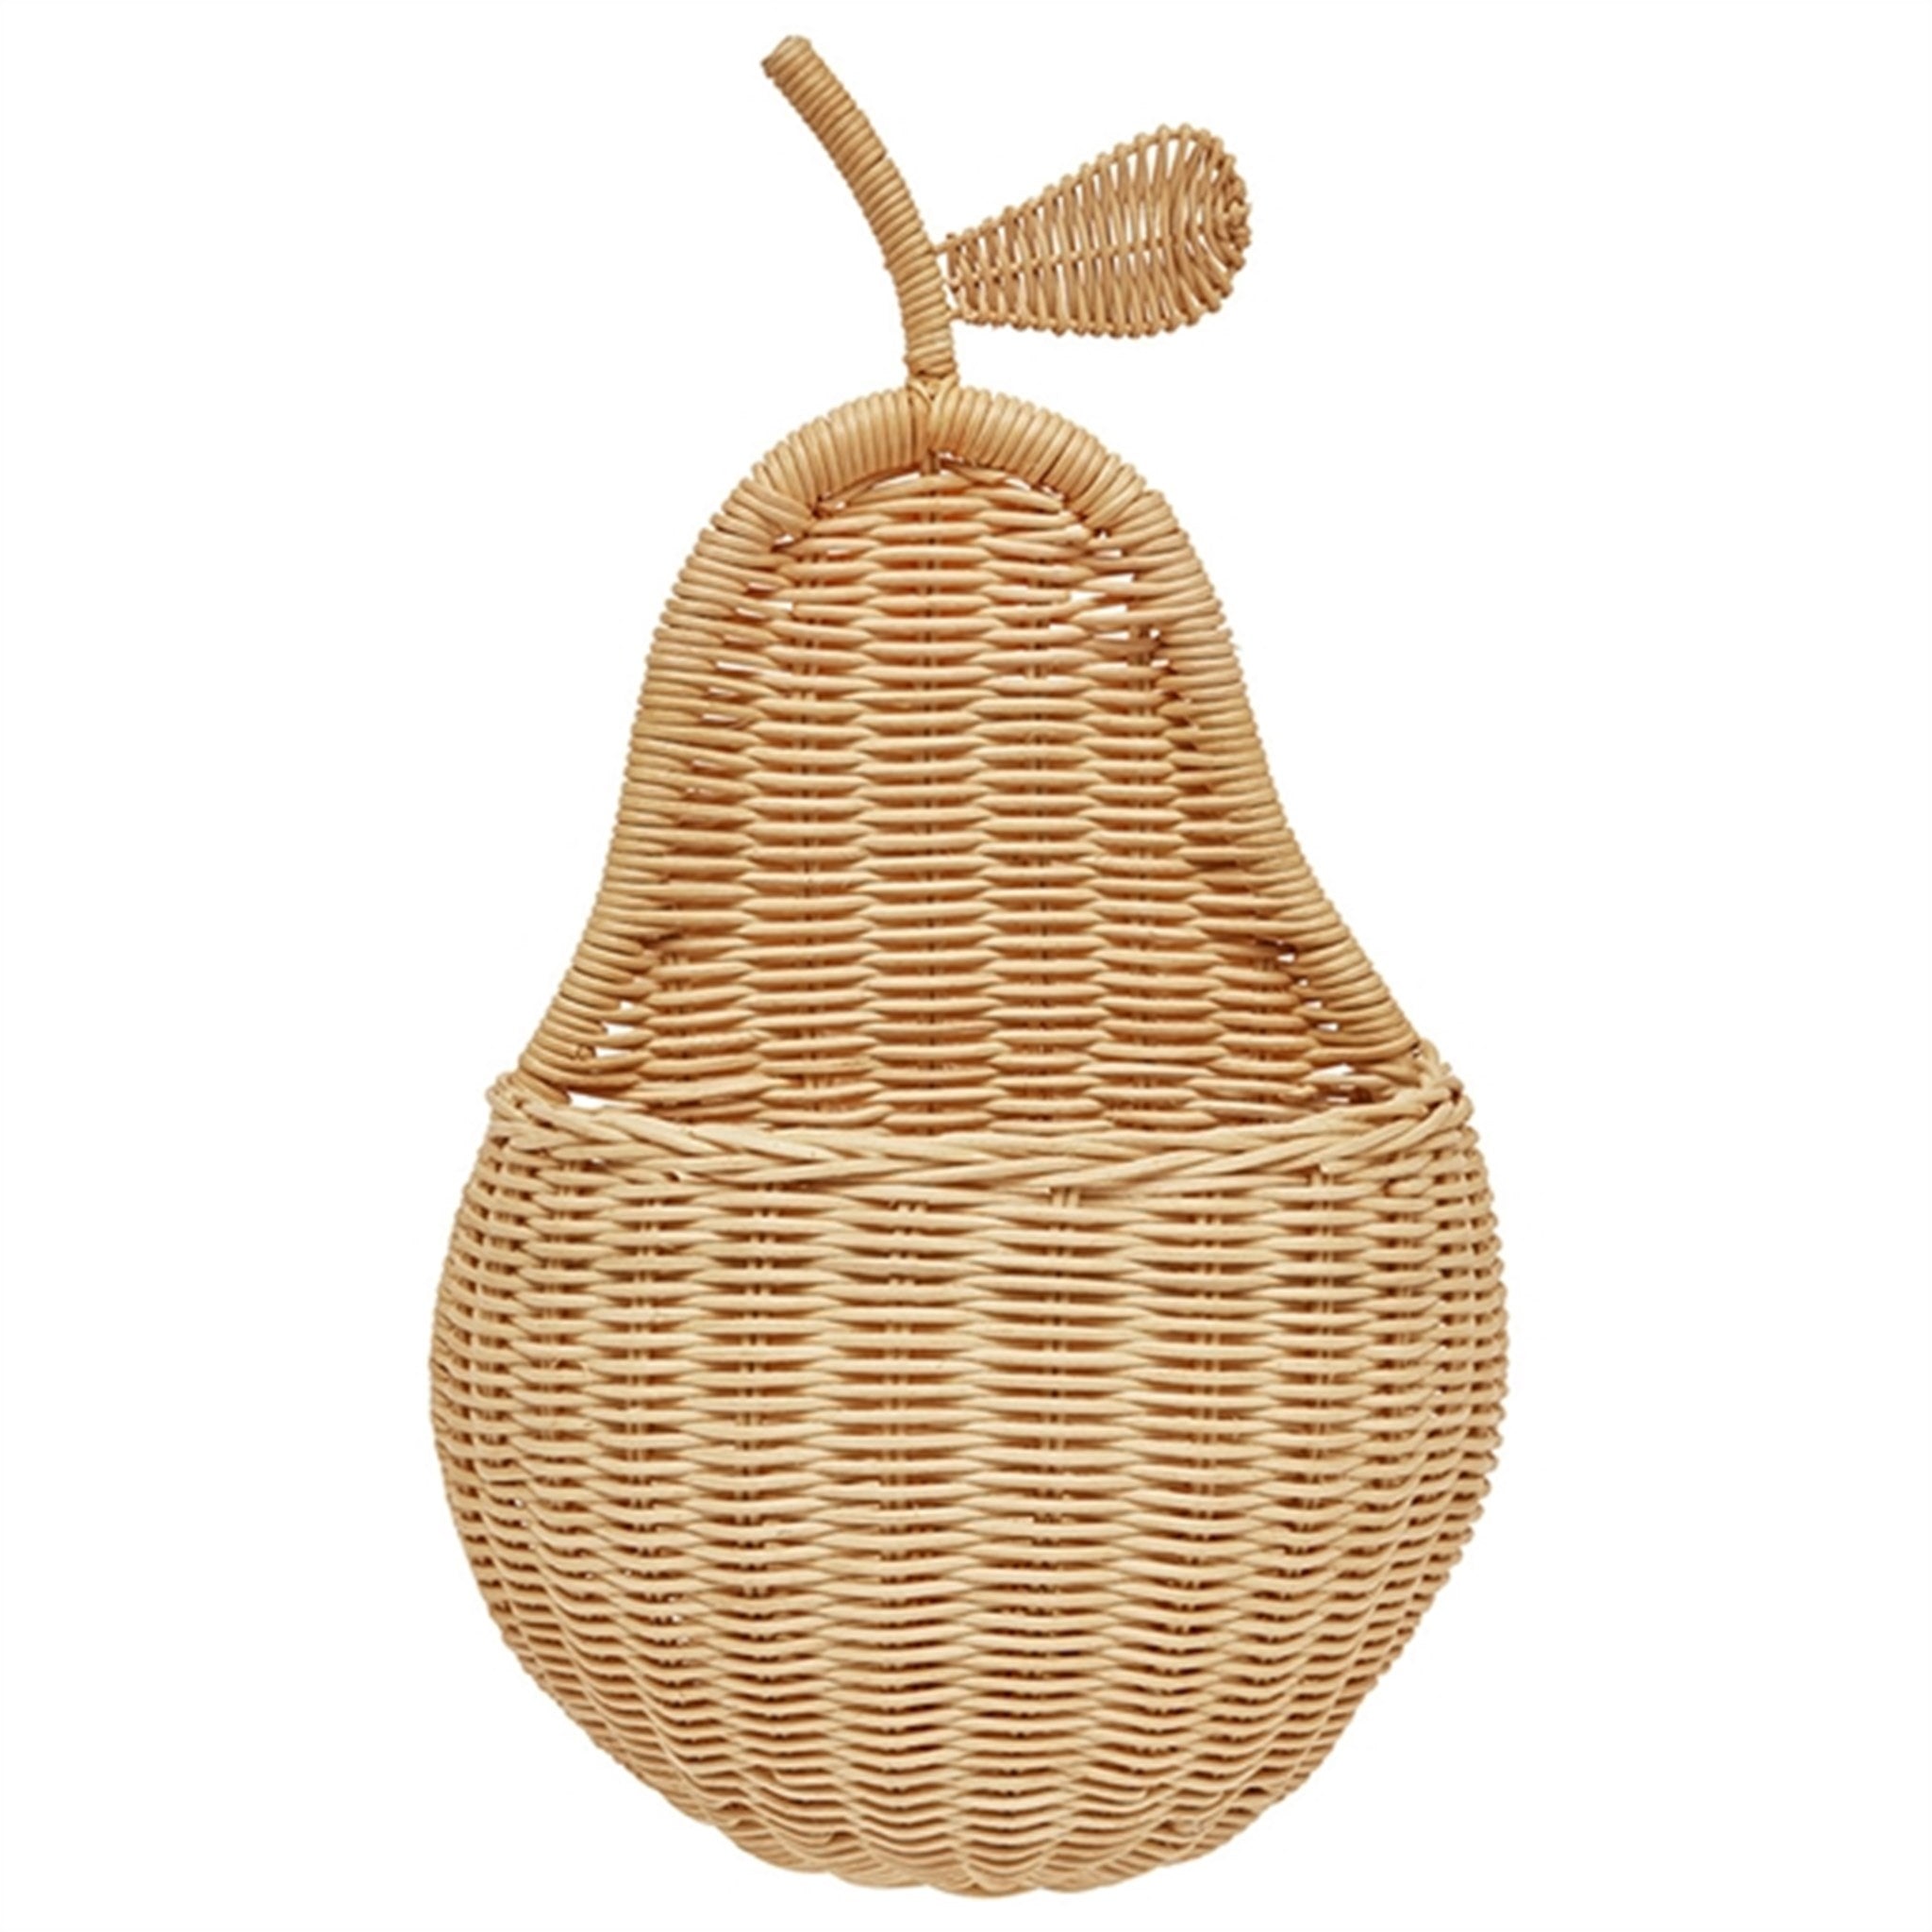 OYOY Pear Wall Basket